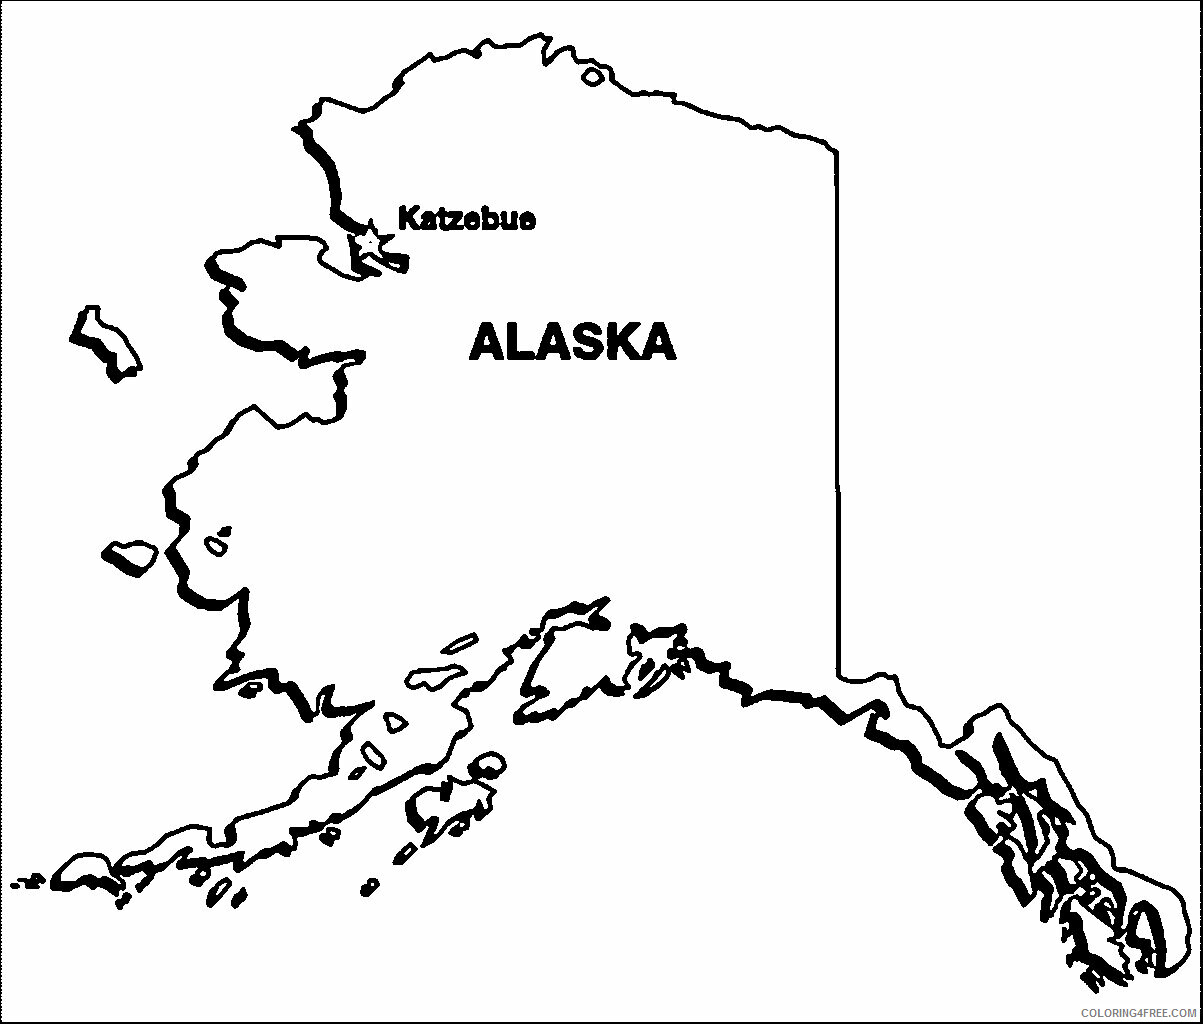 Alaska Map Coloring Page Printable Sheets Alaska Map Wecoloringpage jpg 2021 a 3385 Coloring4free